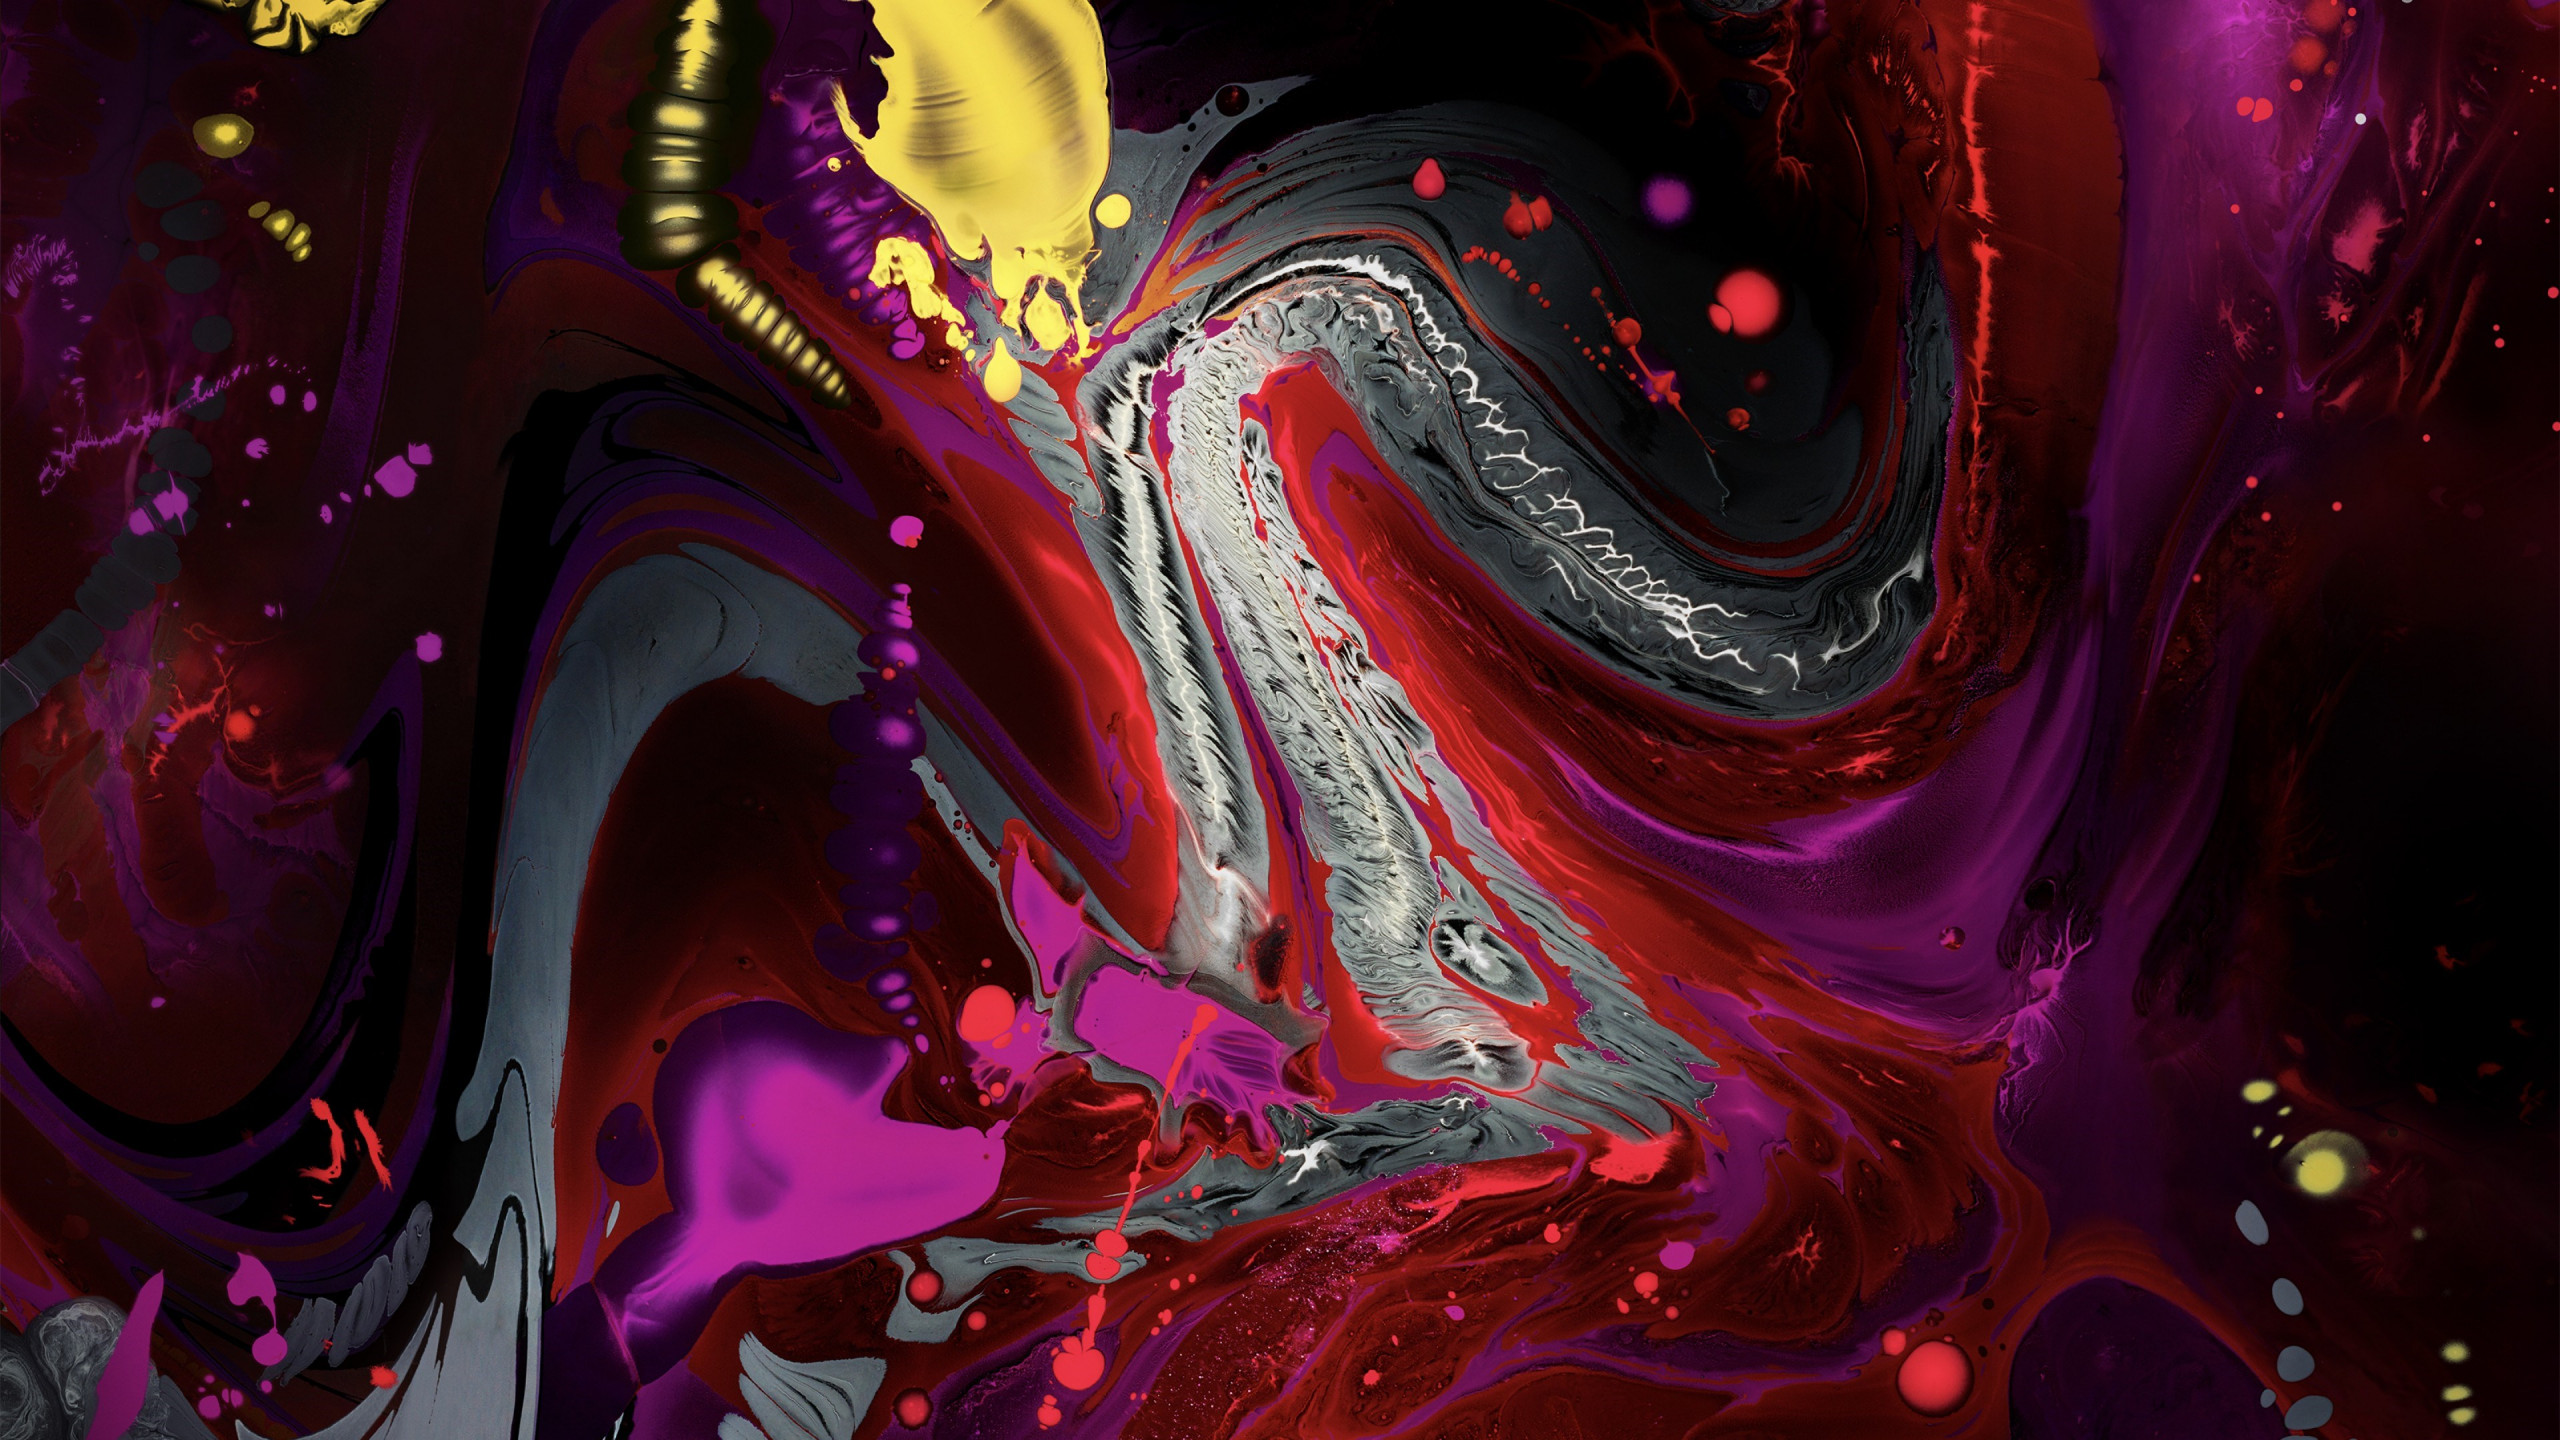 Liquid colors from iPad 2018 wallpaper 2560x1440